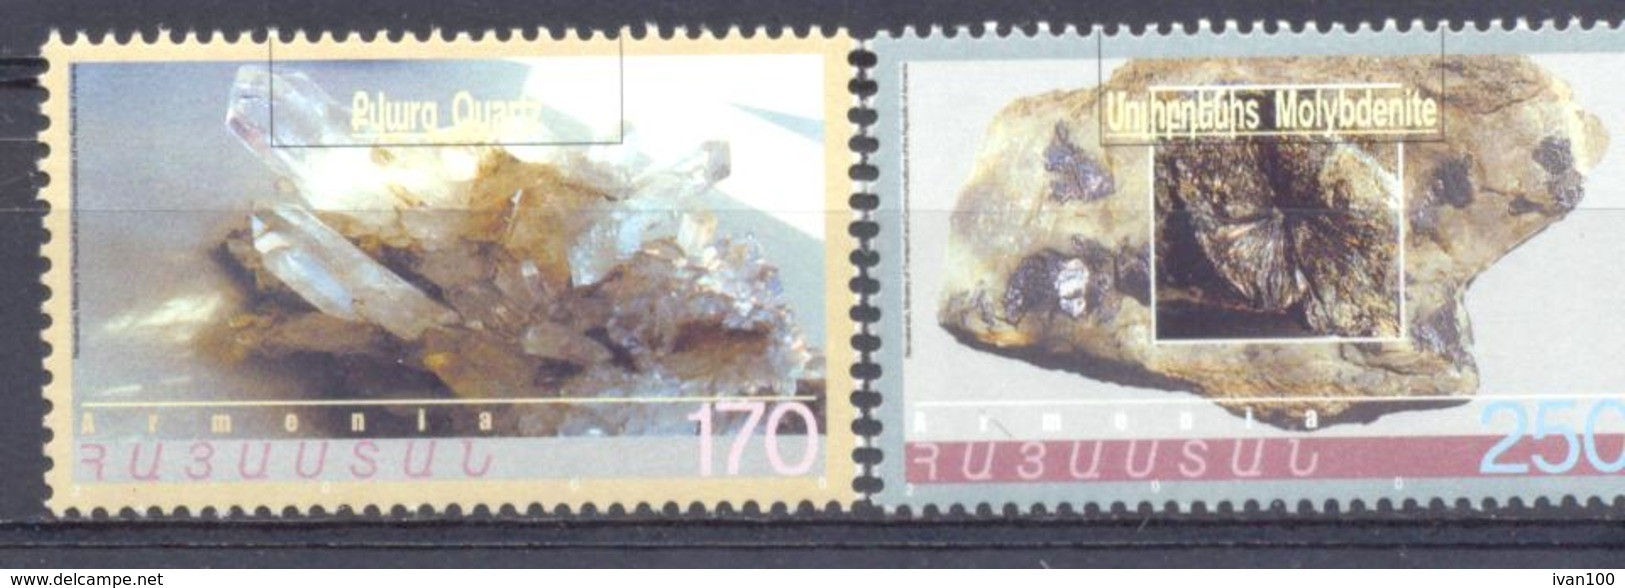 2000. Armenia, Minelars, 2v, Mint/** - Armenien